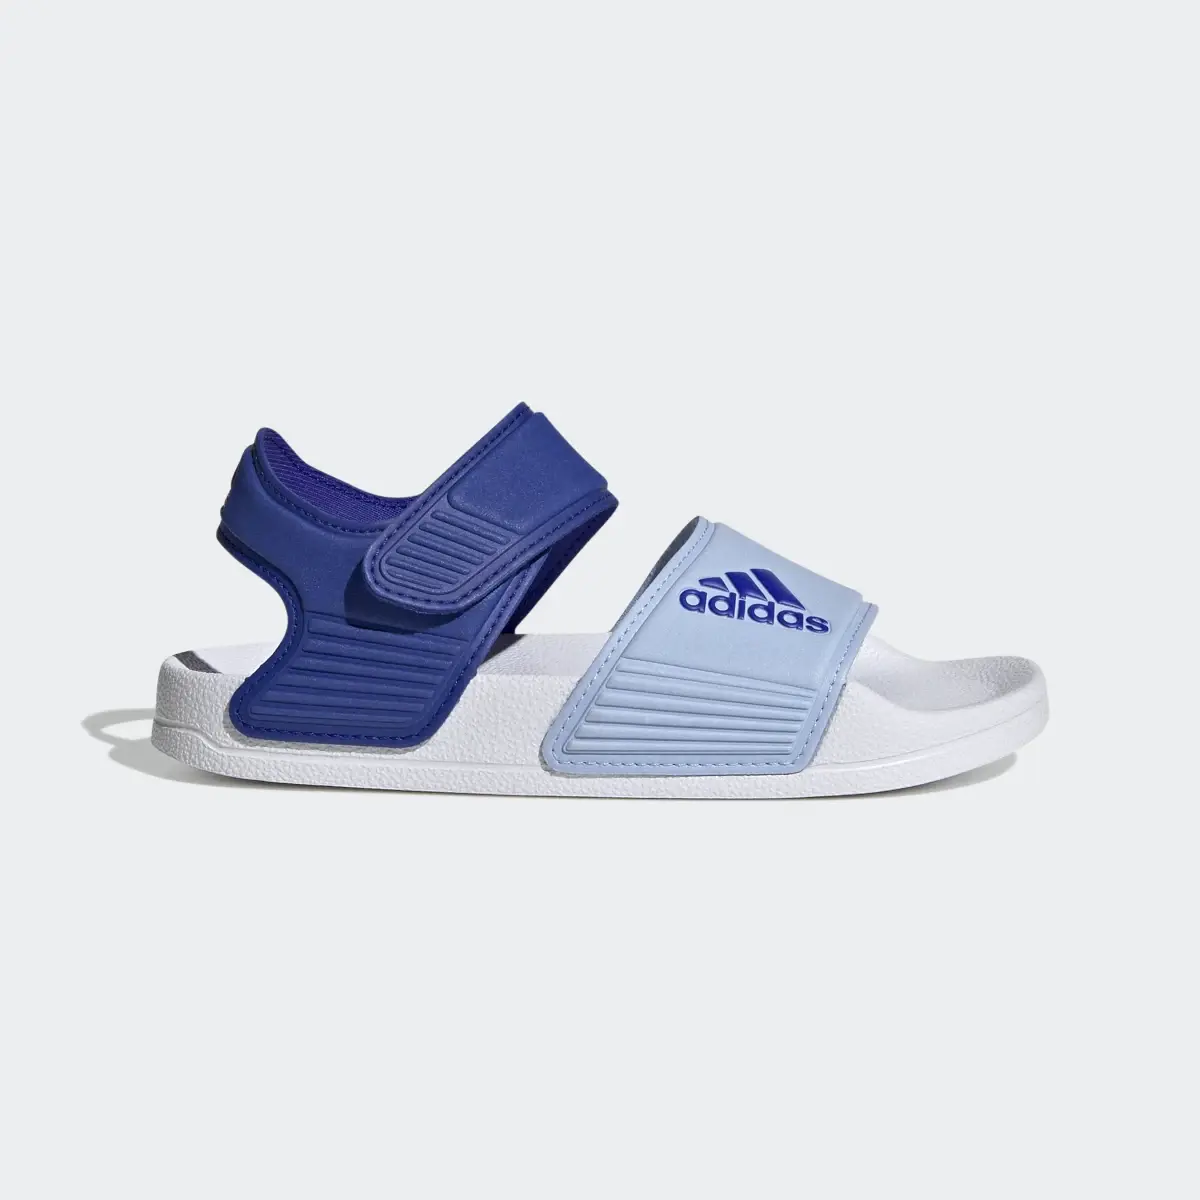 Adidas Adilette Sandals. 2